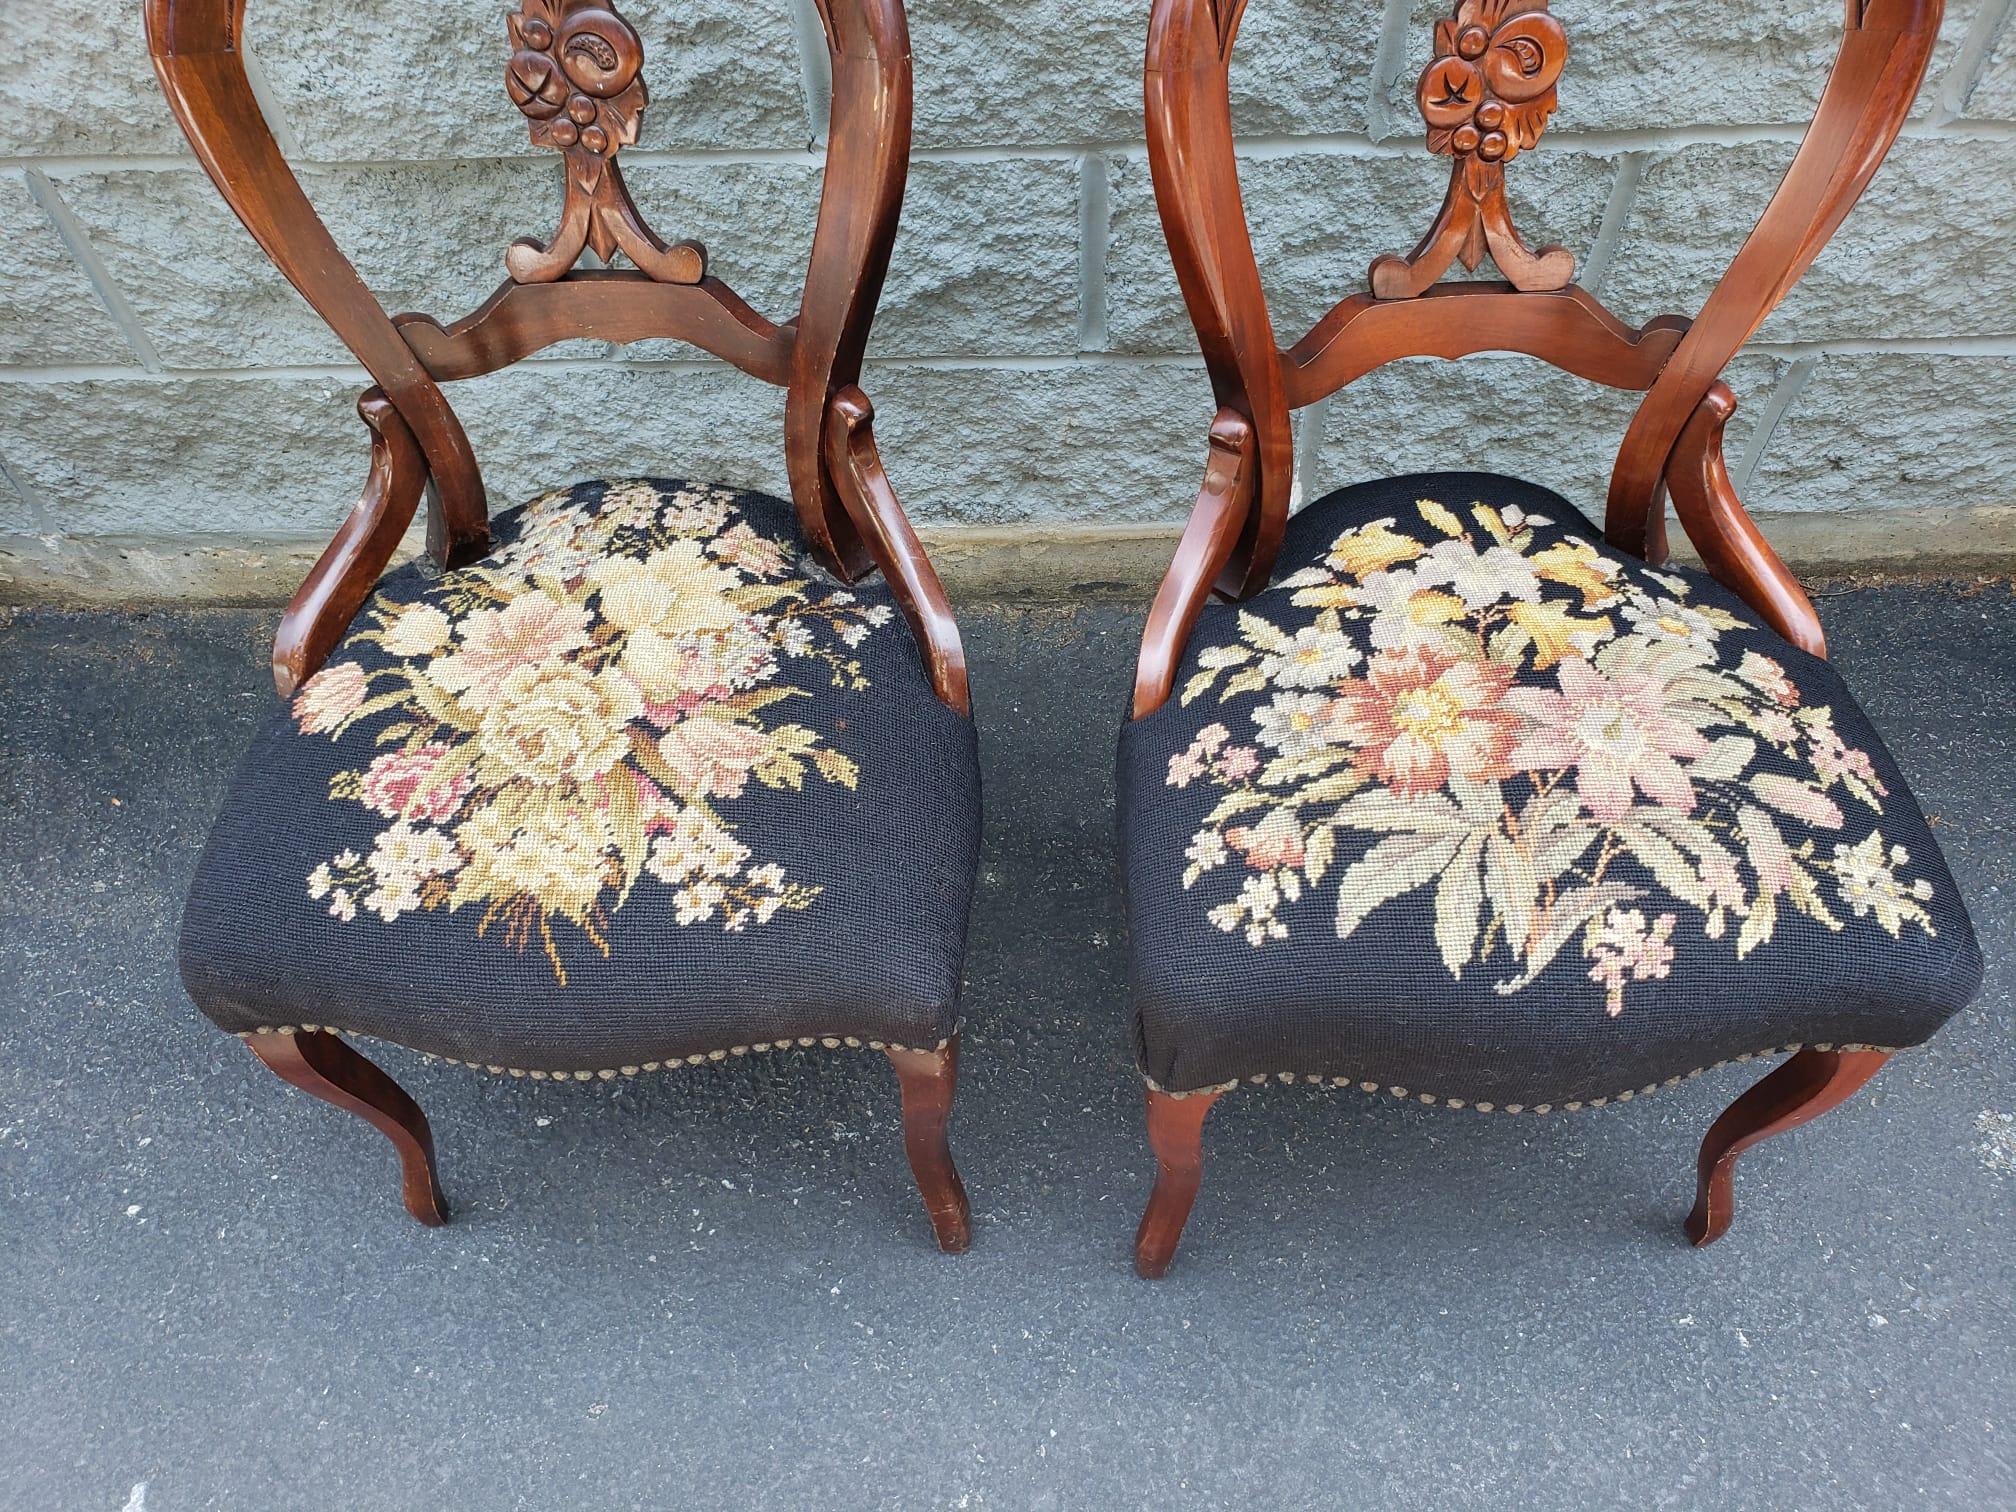 Une fabuleuse paire de chaises victoriennes en acajou et tapissées de pointes d'aiguilles florales avec des garnitures de têtes de clous. 
Très bon état vintage. Mesurent 19